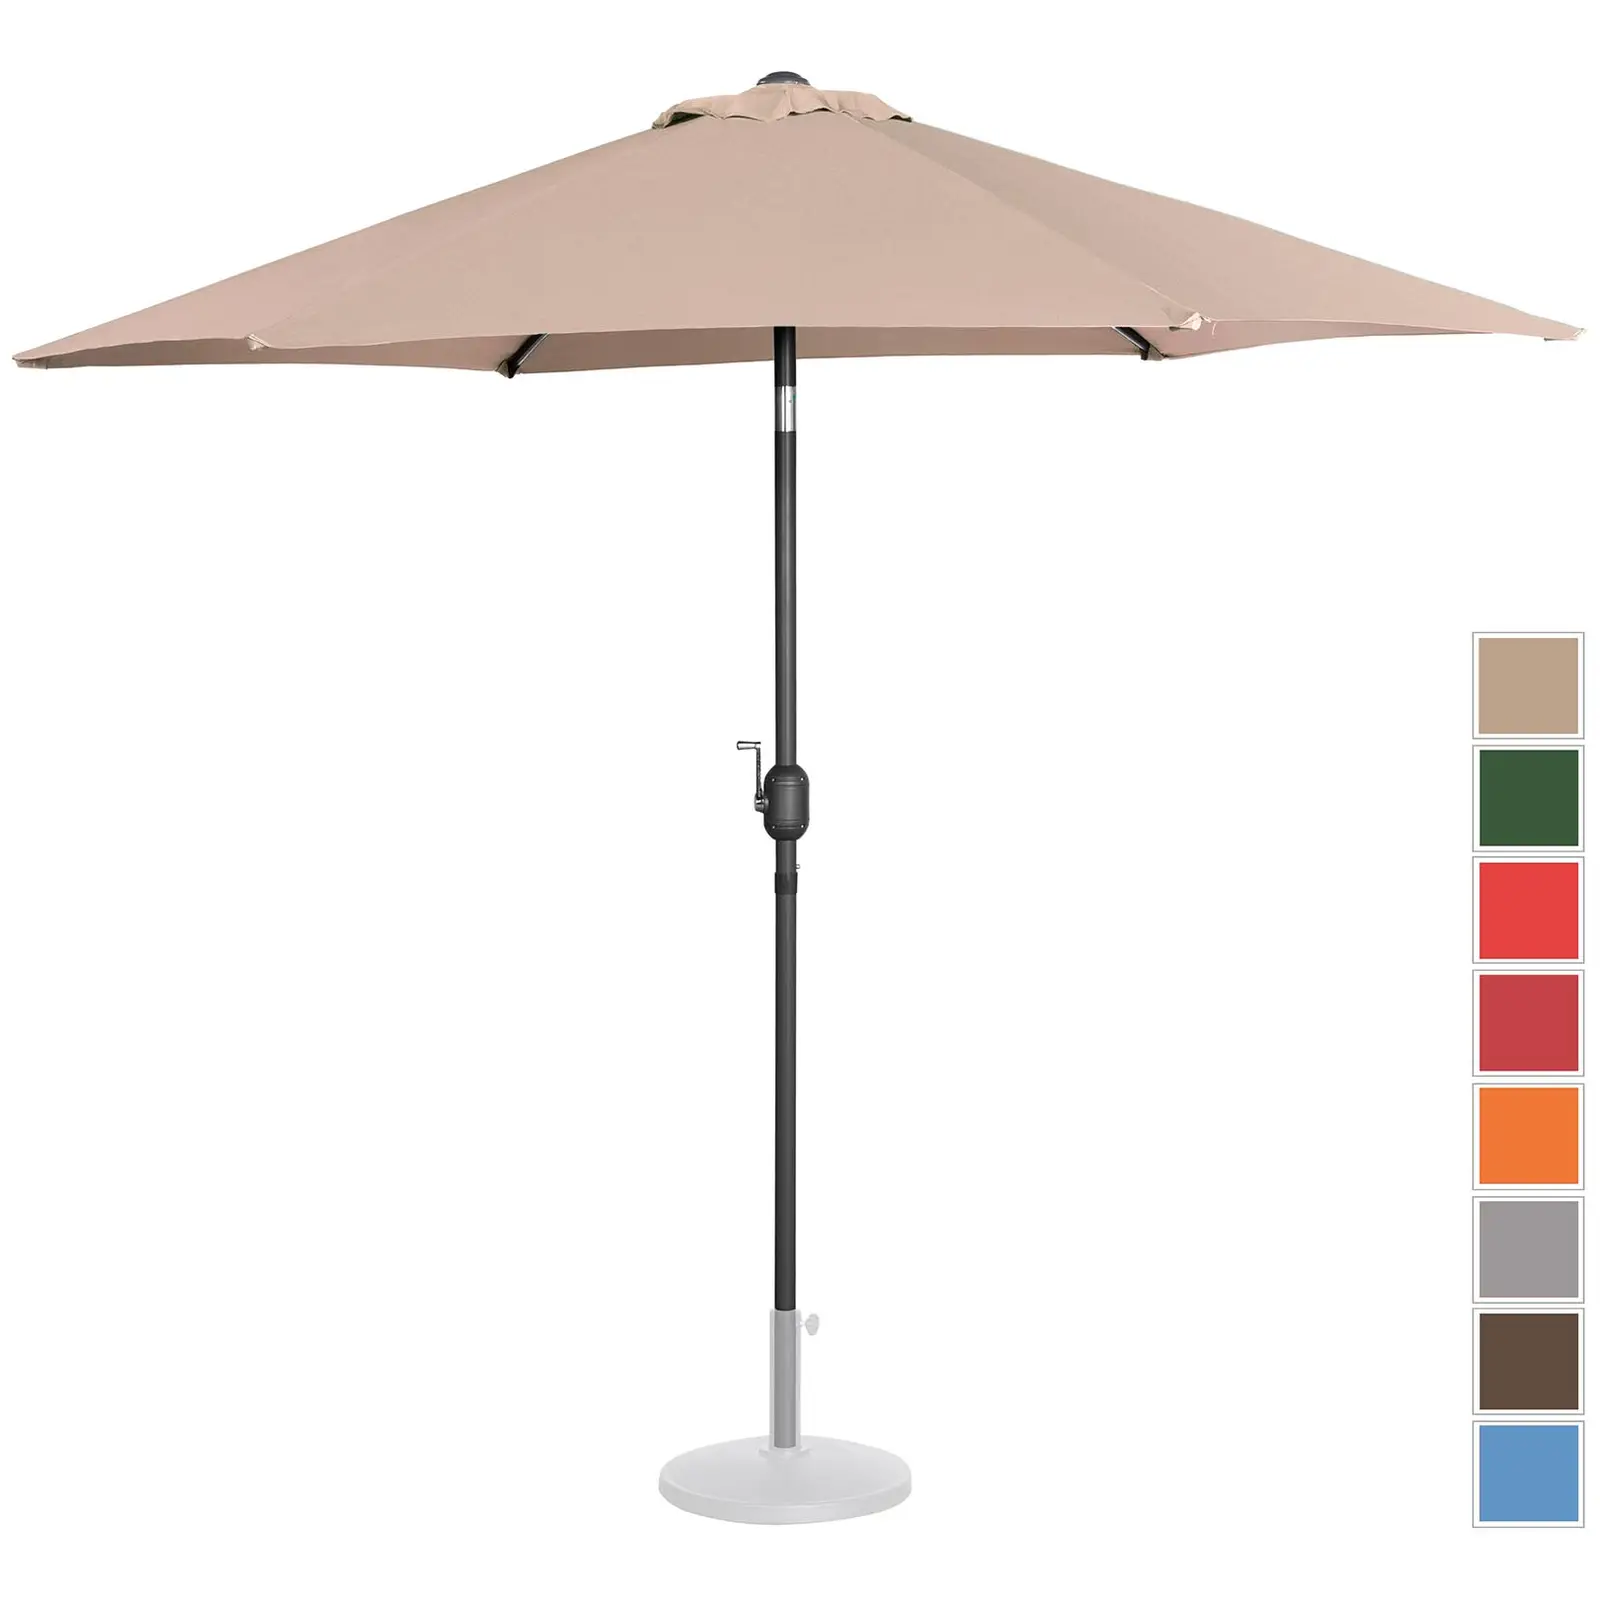 B-varer Stor parasoll - krem - sekskantet - Ø 270 cm - kan skråstilles